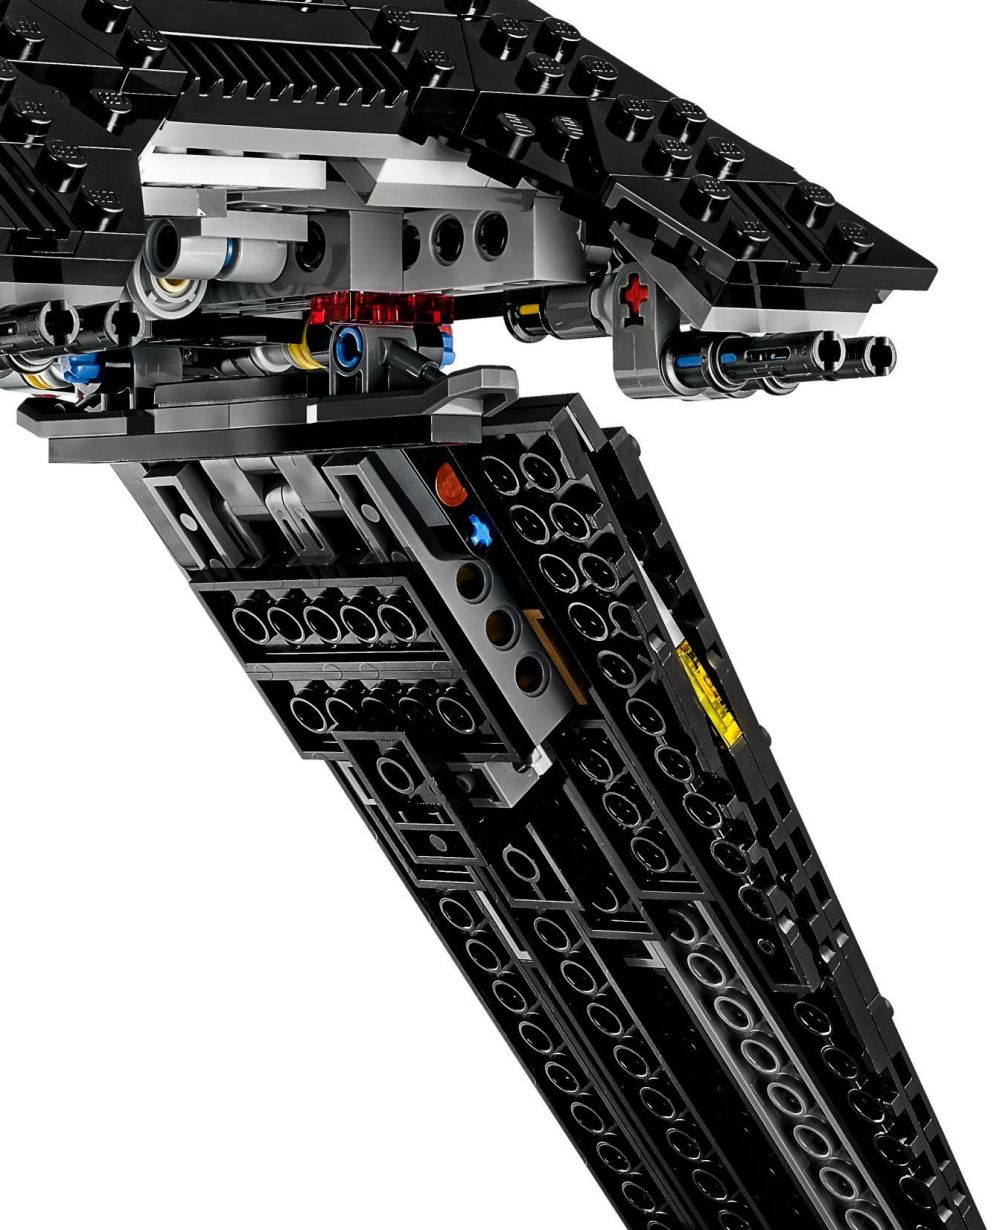 LEGO Star Wars 75156 pas cher, Krennic's Imperial Shuttle